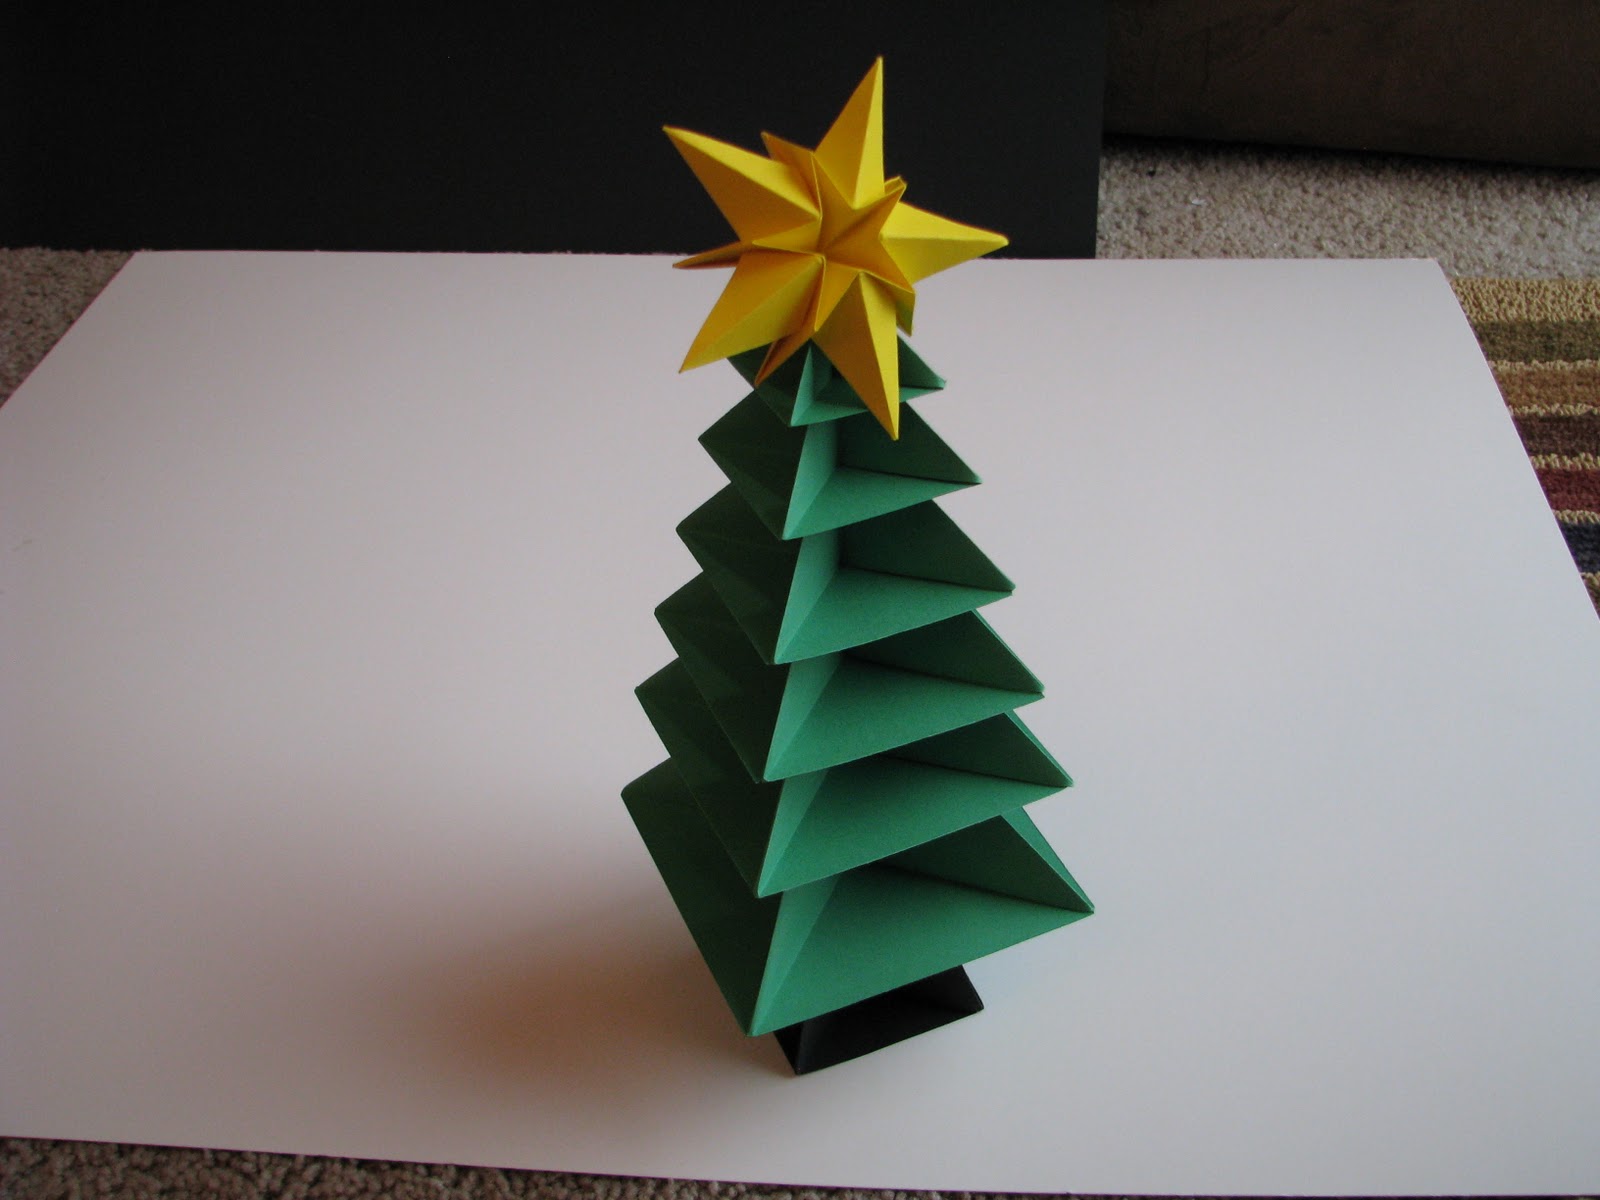 příklad vytvoření neobvyklého vánočního stromu z kartonu sami